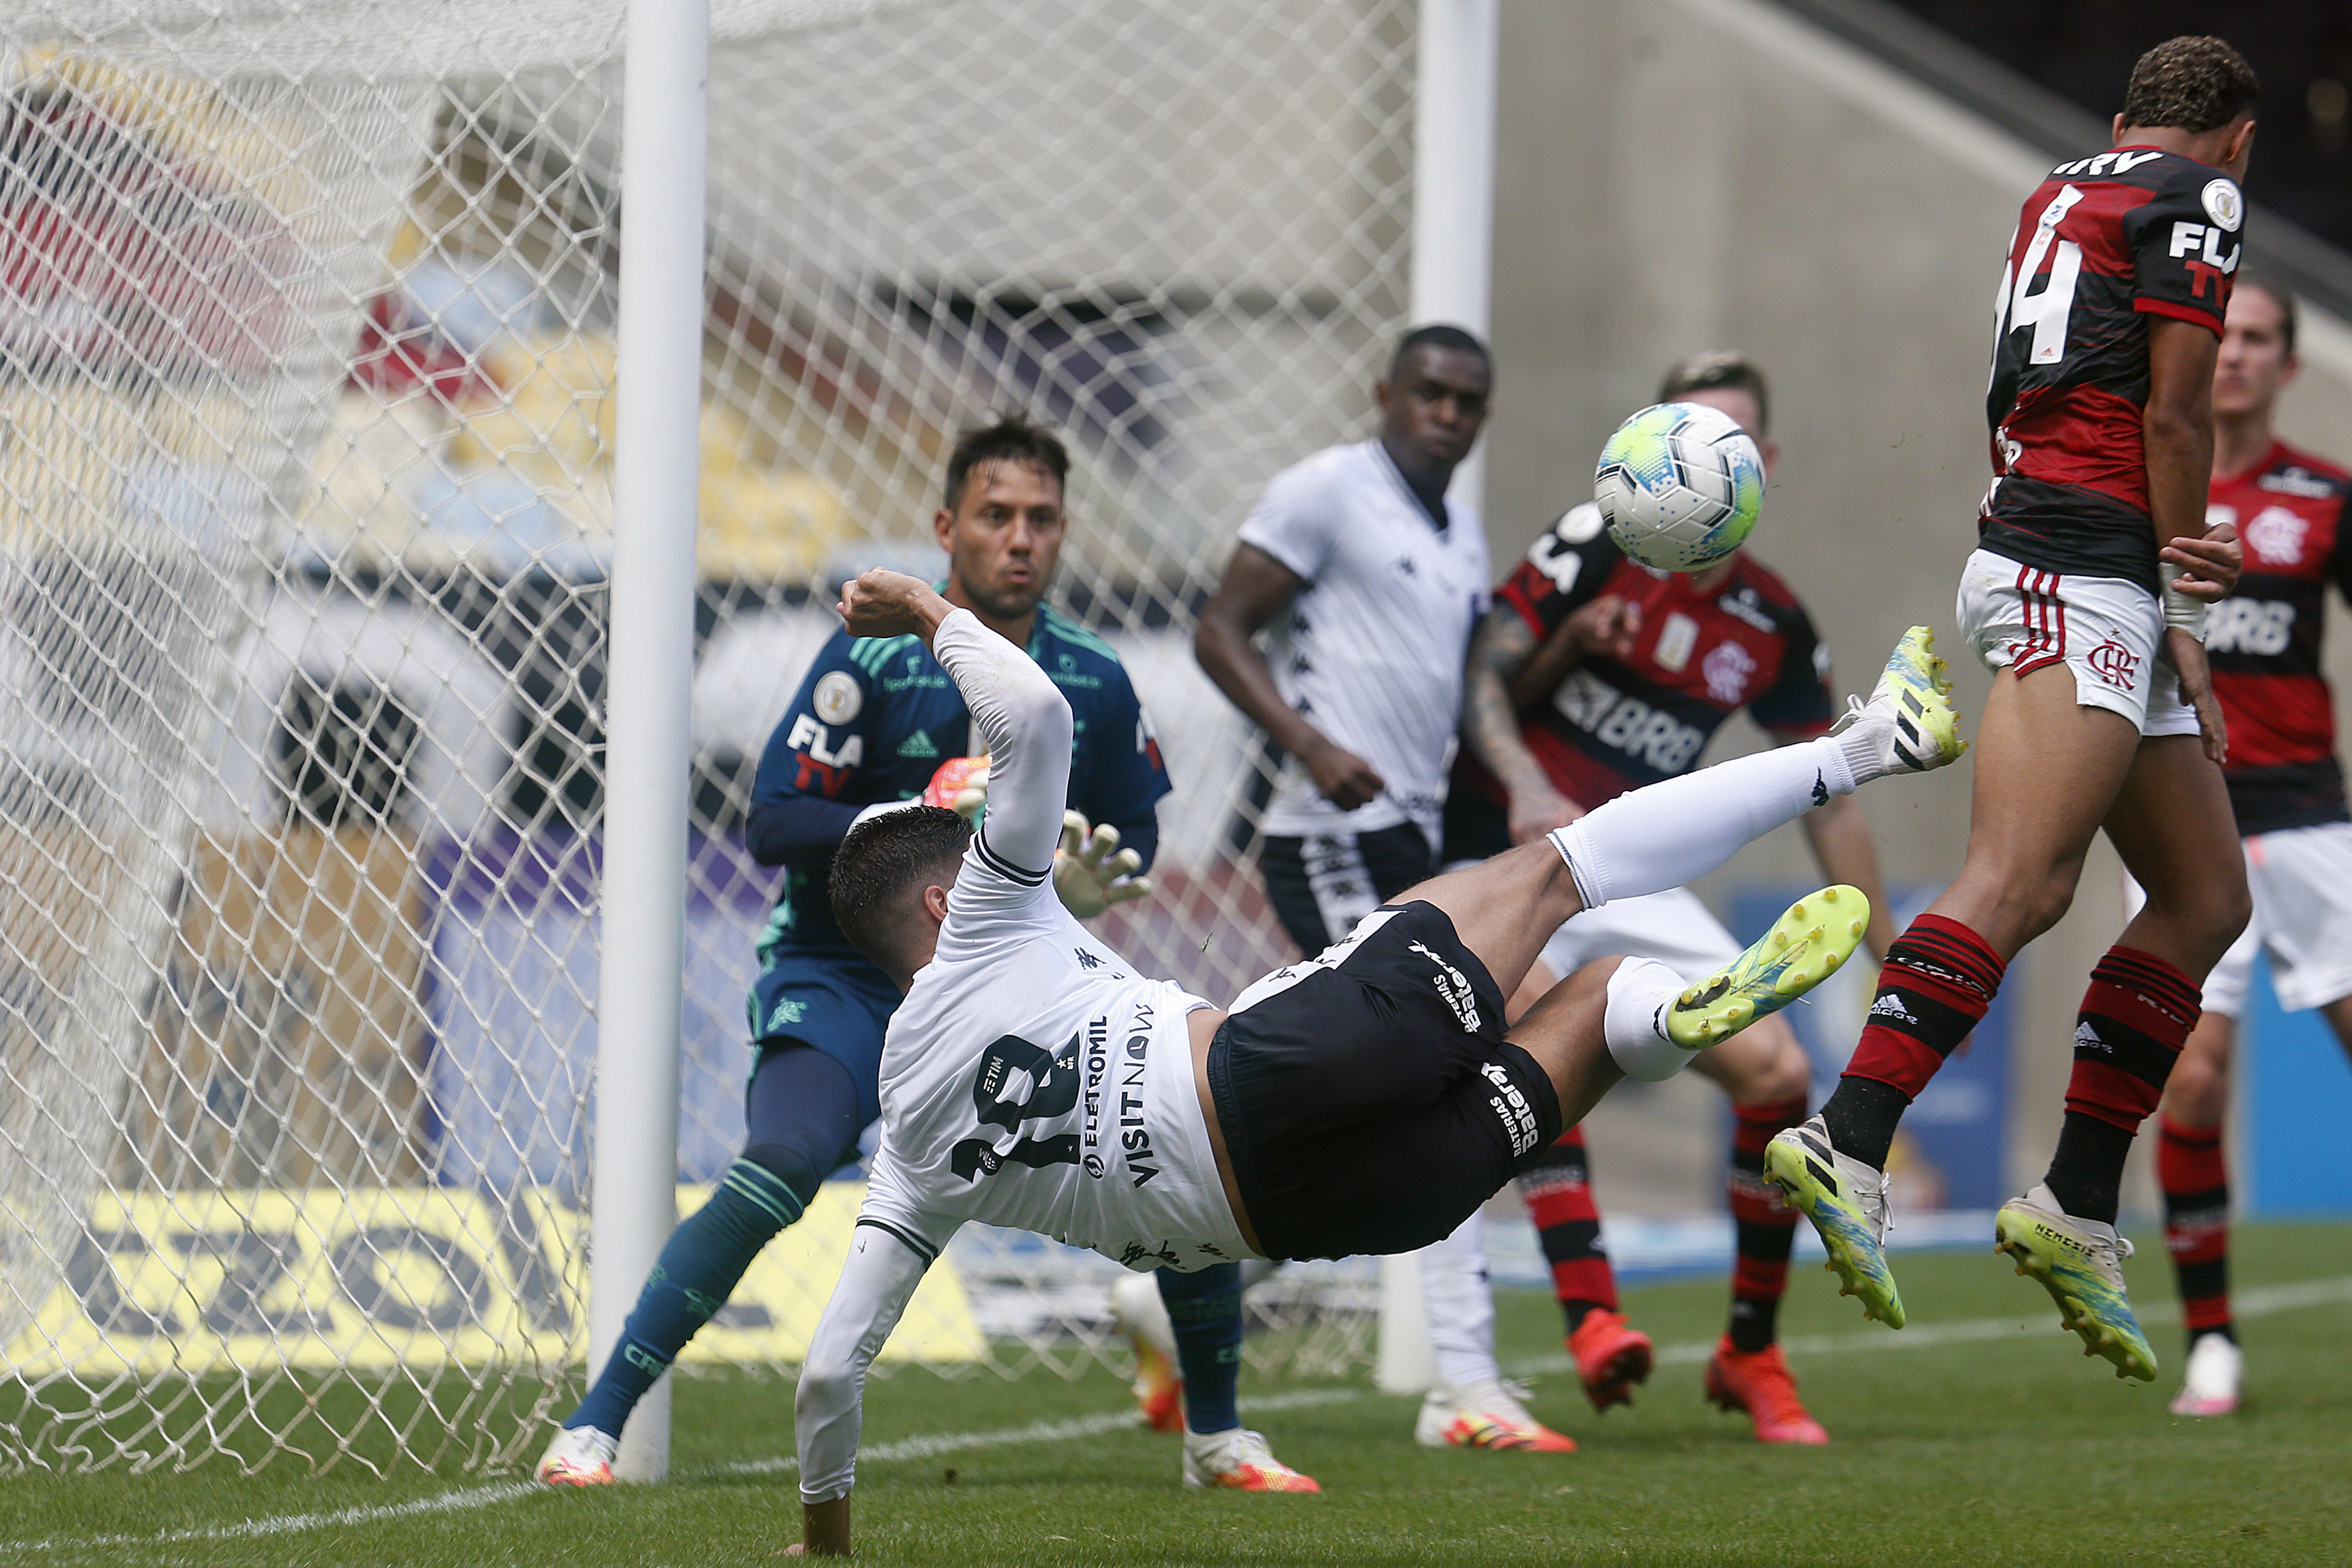 Com VAR, Flamengo faz de pênalti aos 55 do 2º tempo e empata com Botafogo